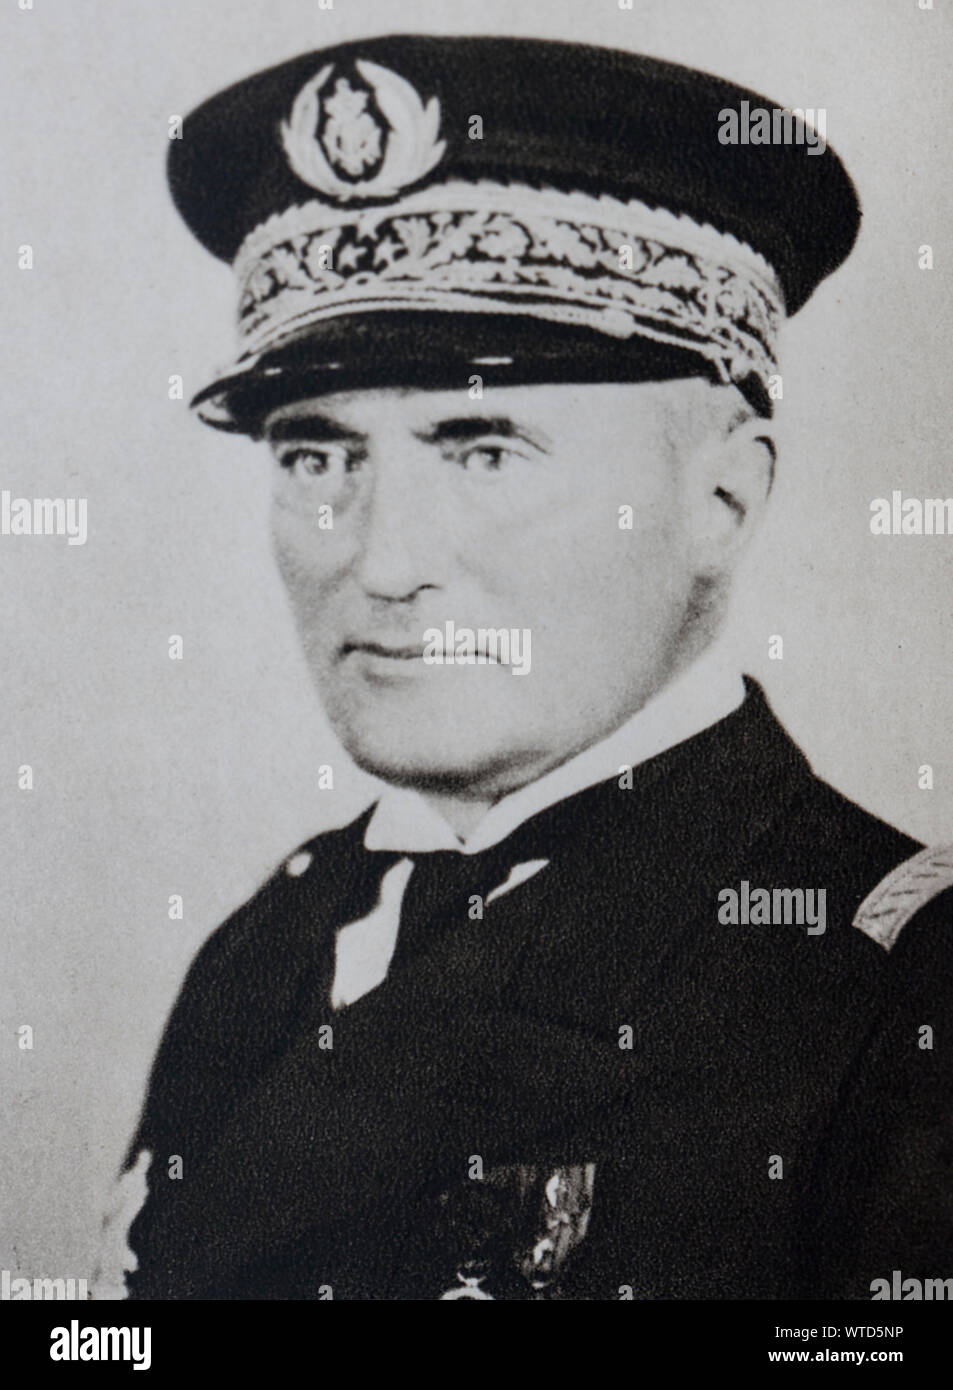 El almirante Darlan, quien estaba buscando pasaje a camp allie cuando fue asesinado el 24 de diciembre de 1942. Foto de stock